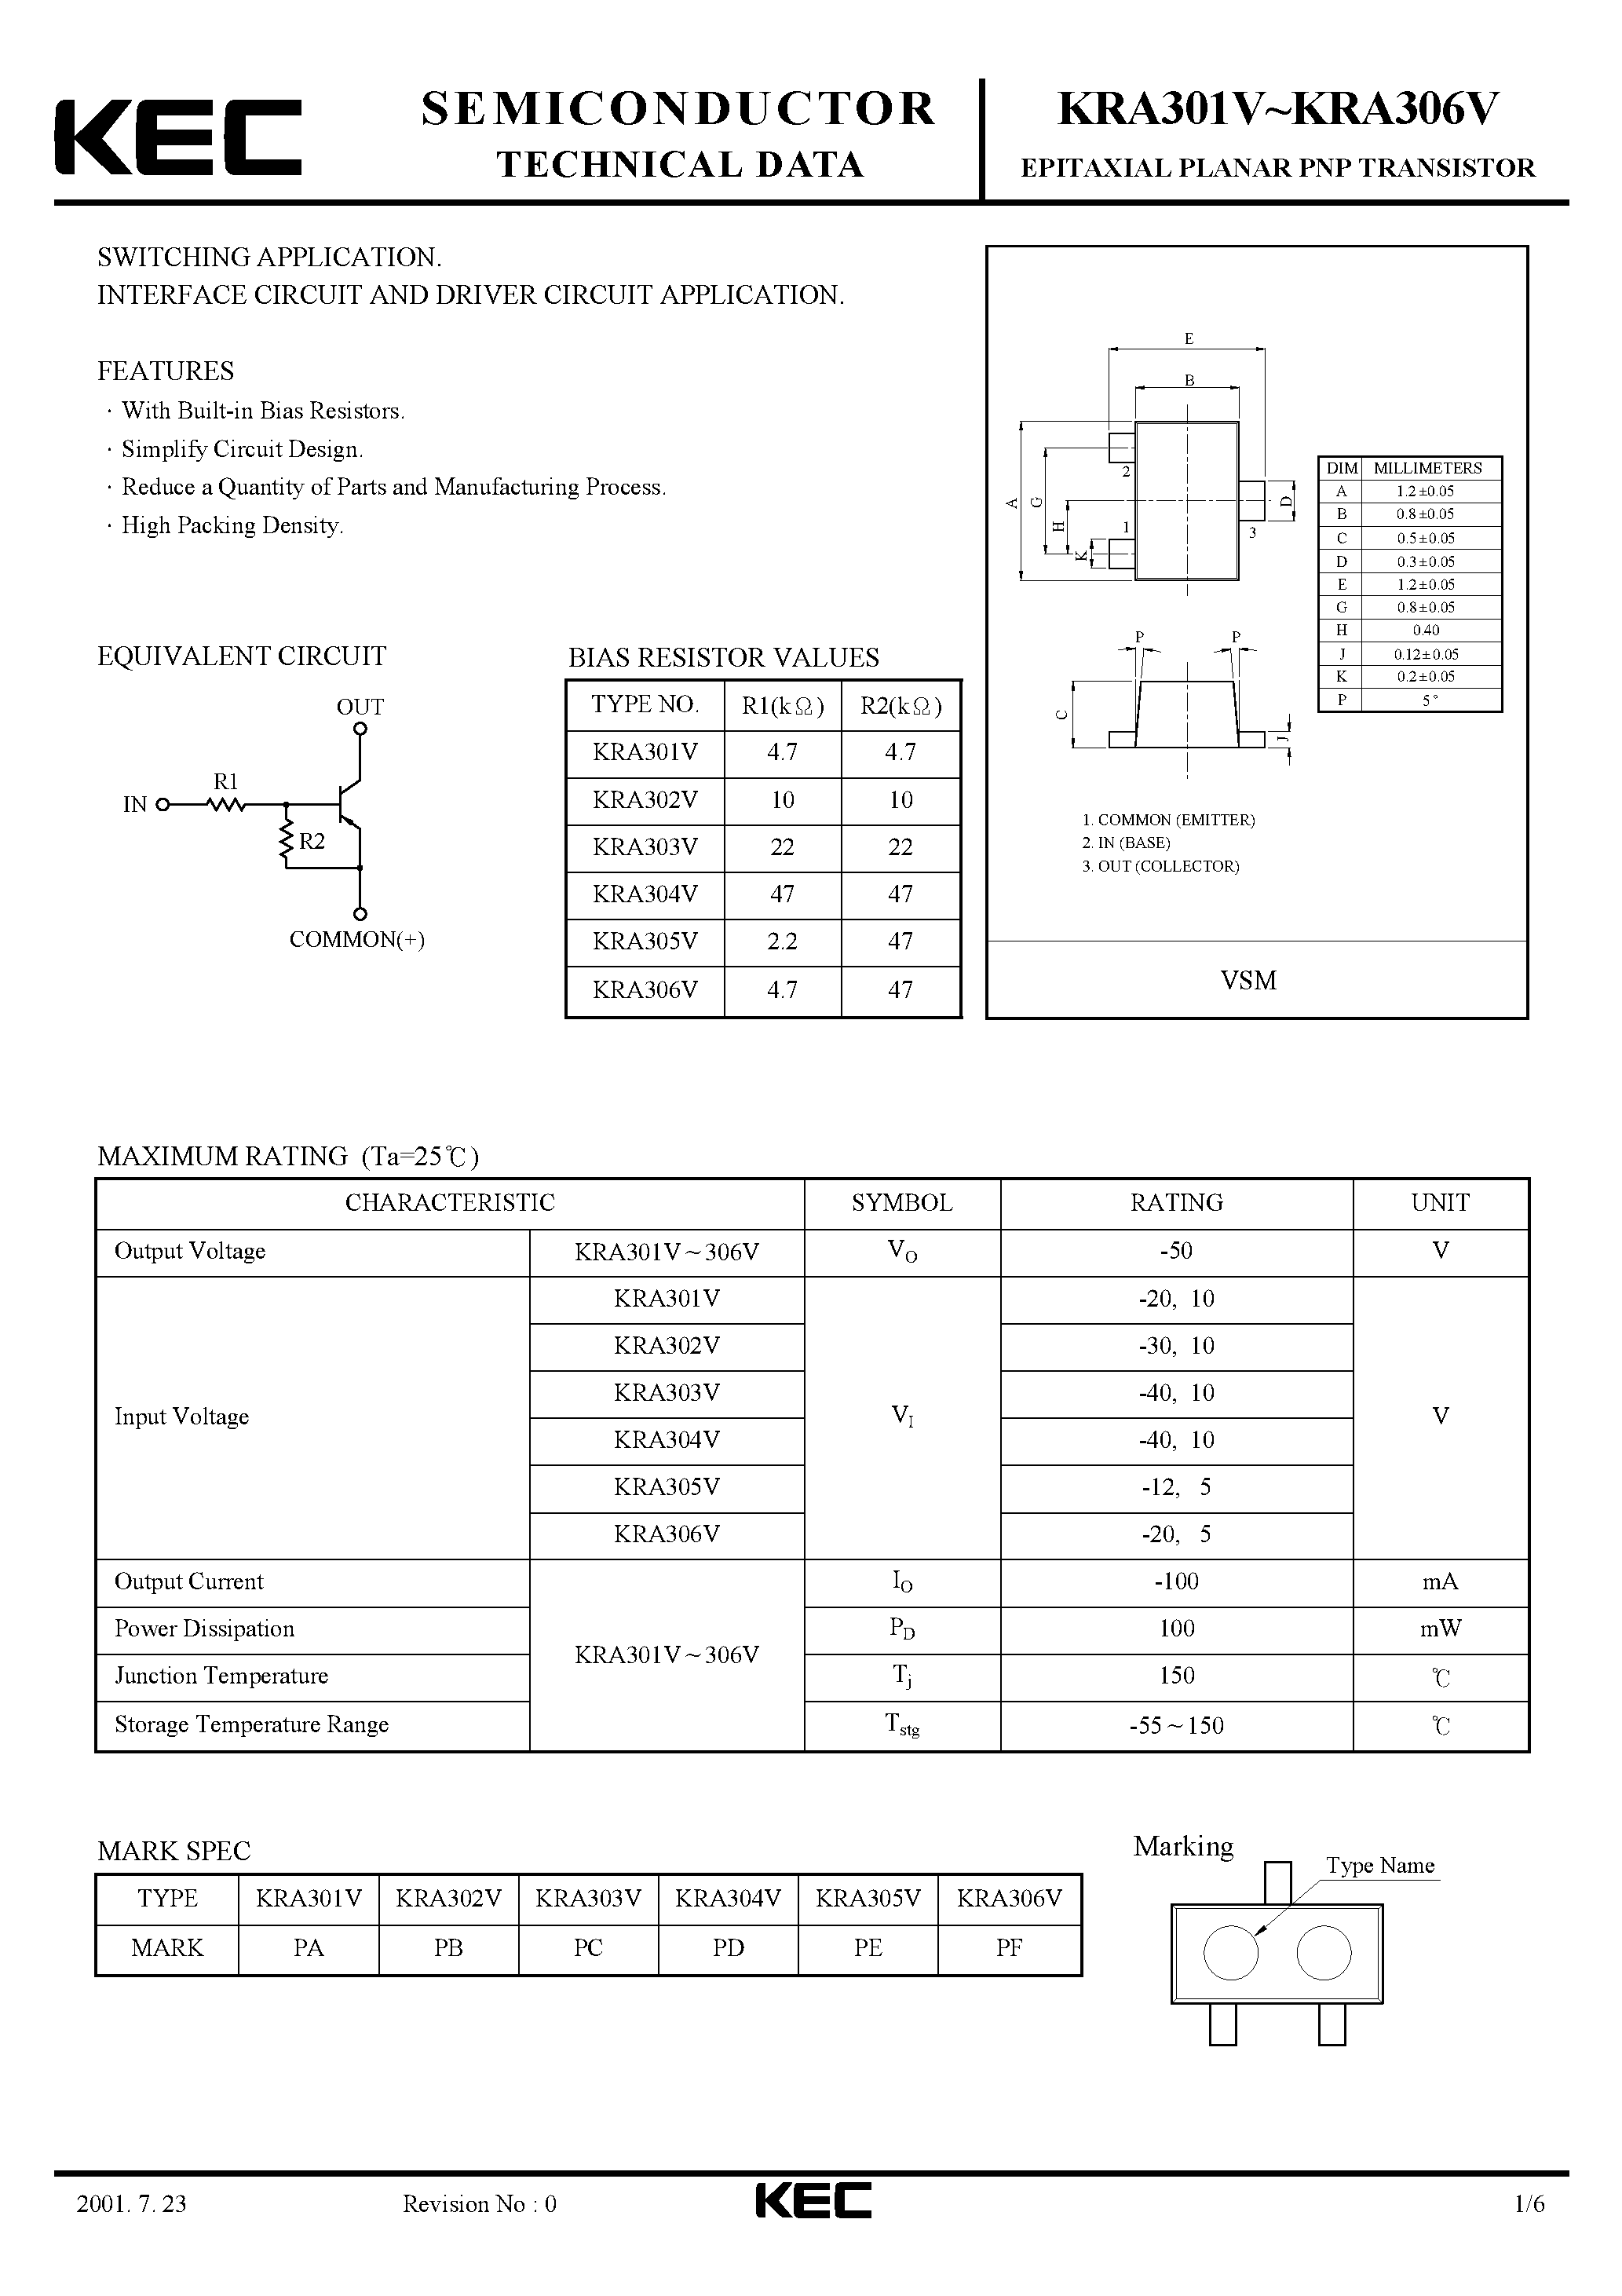 Datasheet KRA301V - (KRA301V - KRA306V) EPITAXIAL PLANAR PNP TRANSISTOR page 1